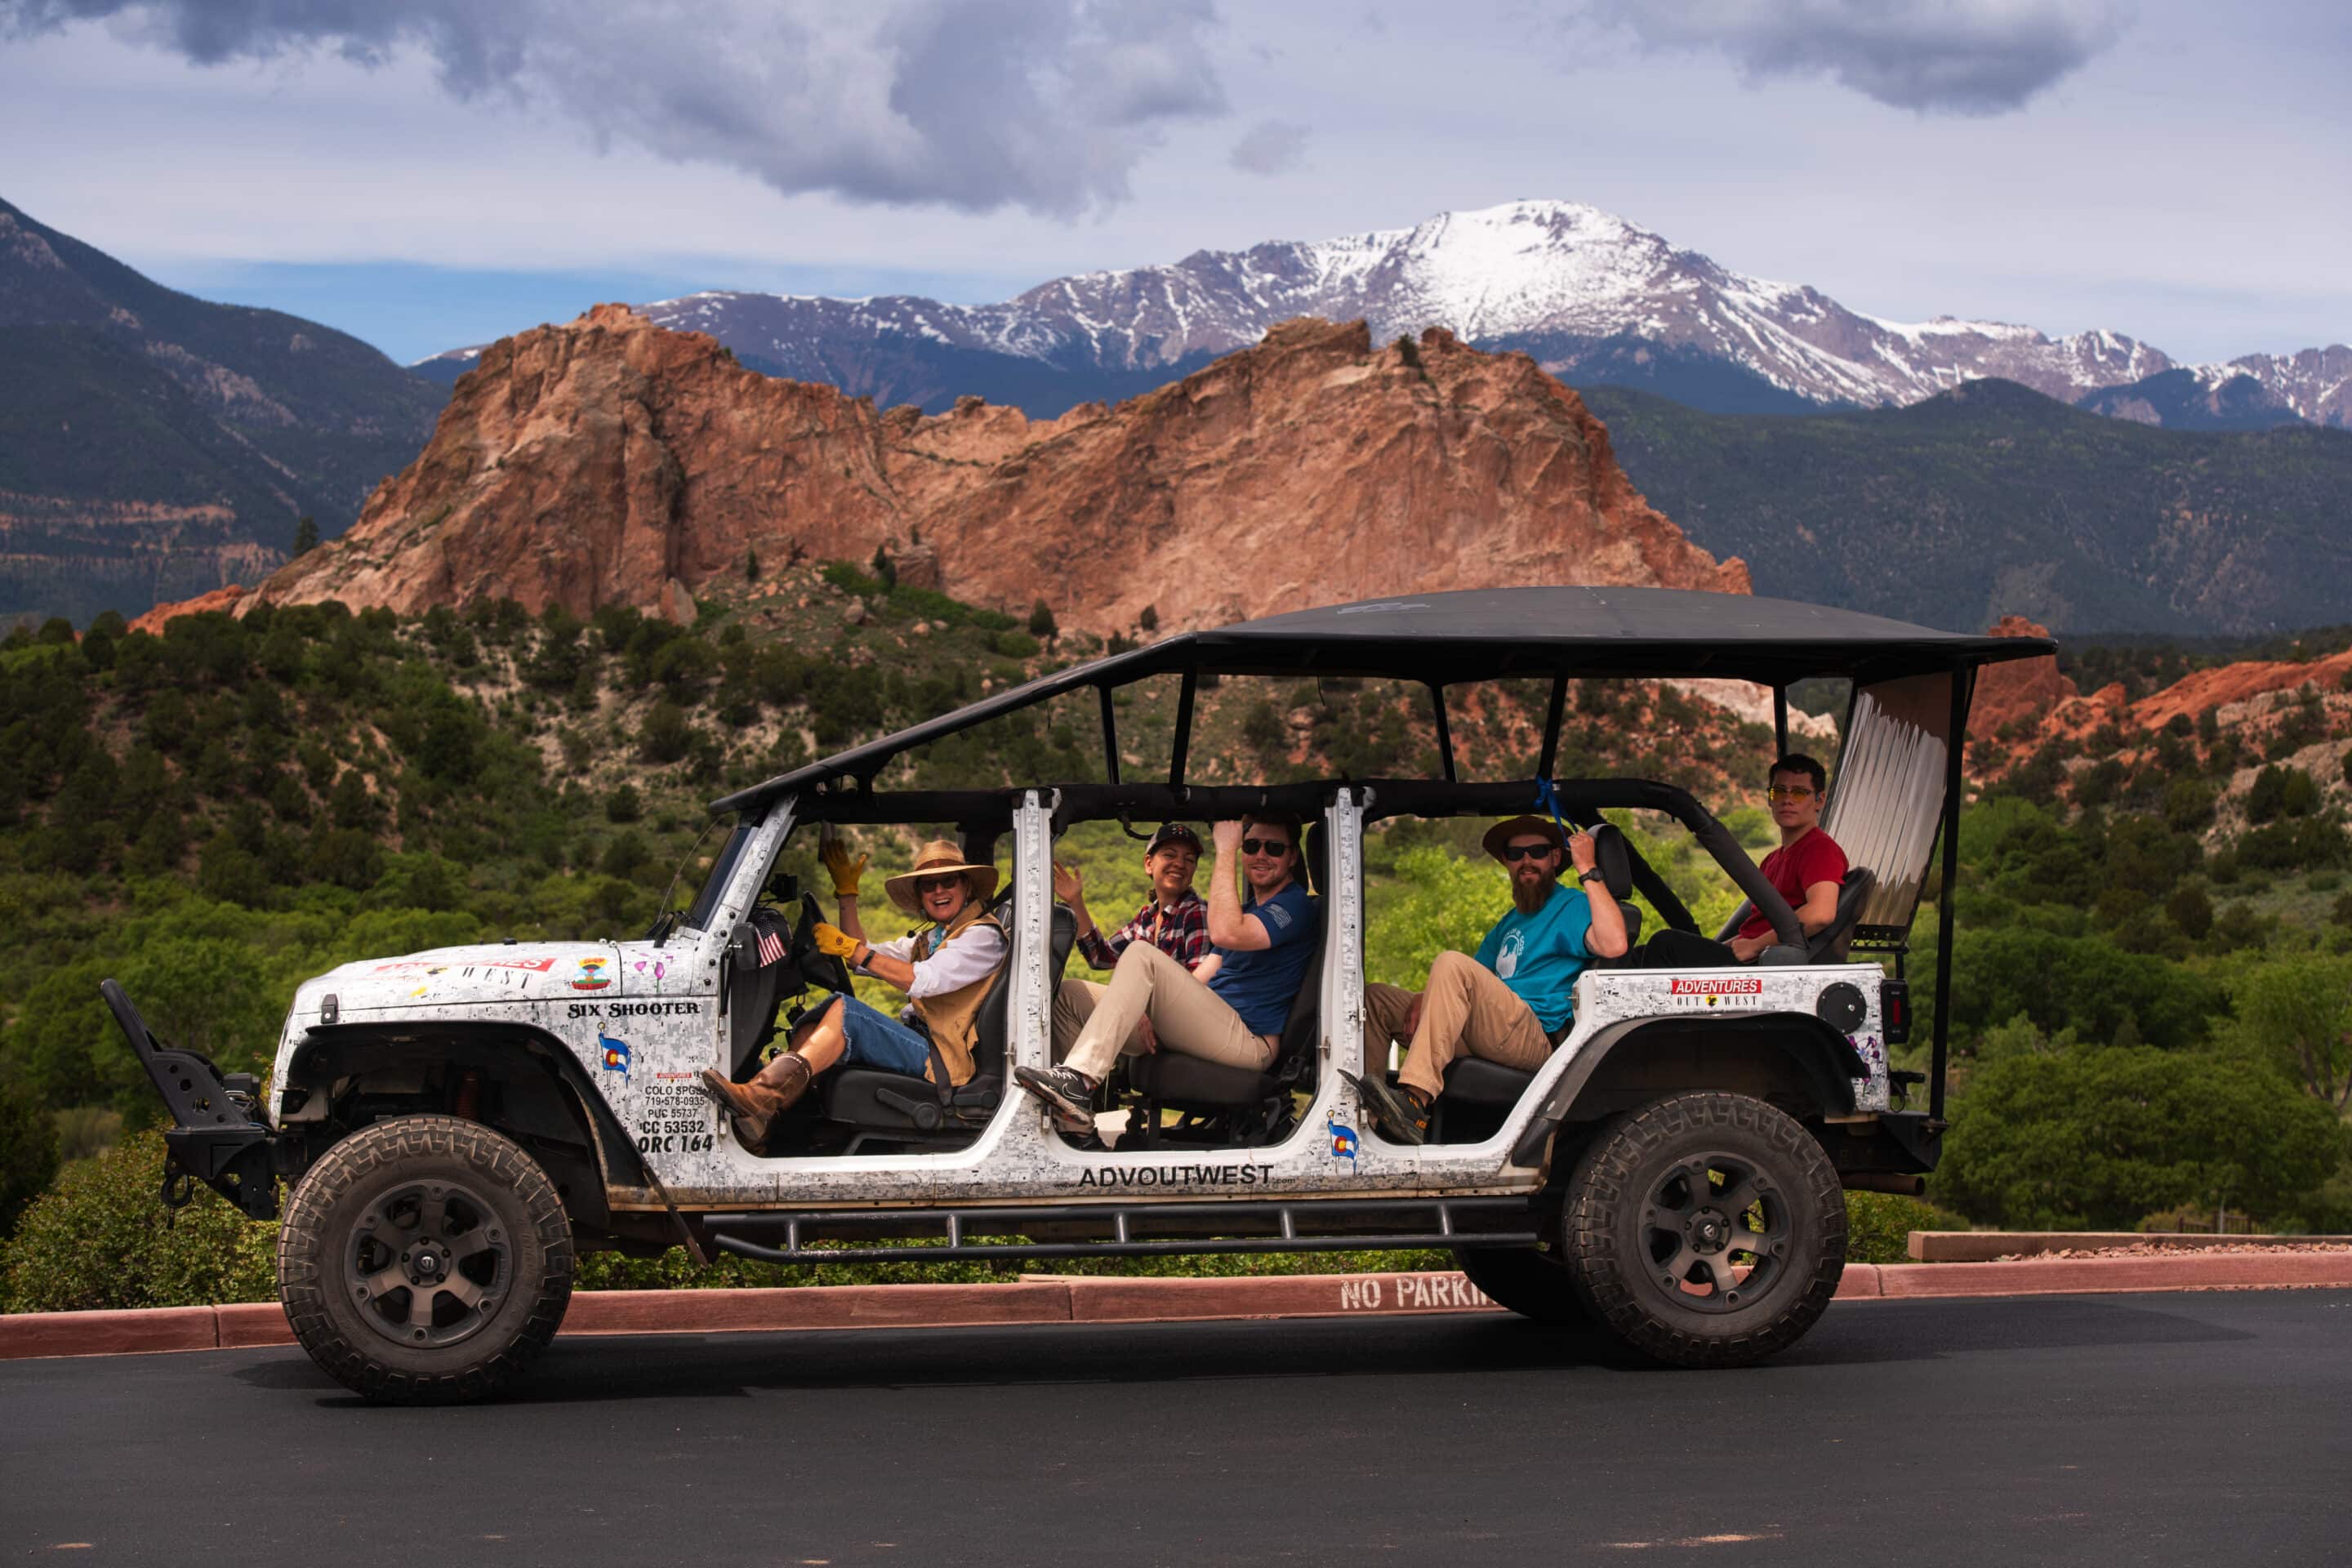 colorado springs jeep tour